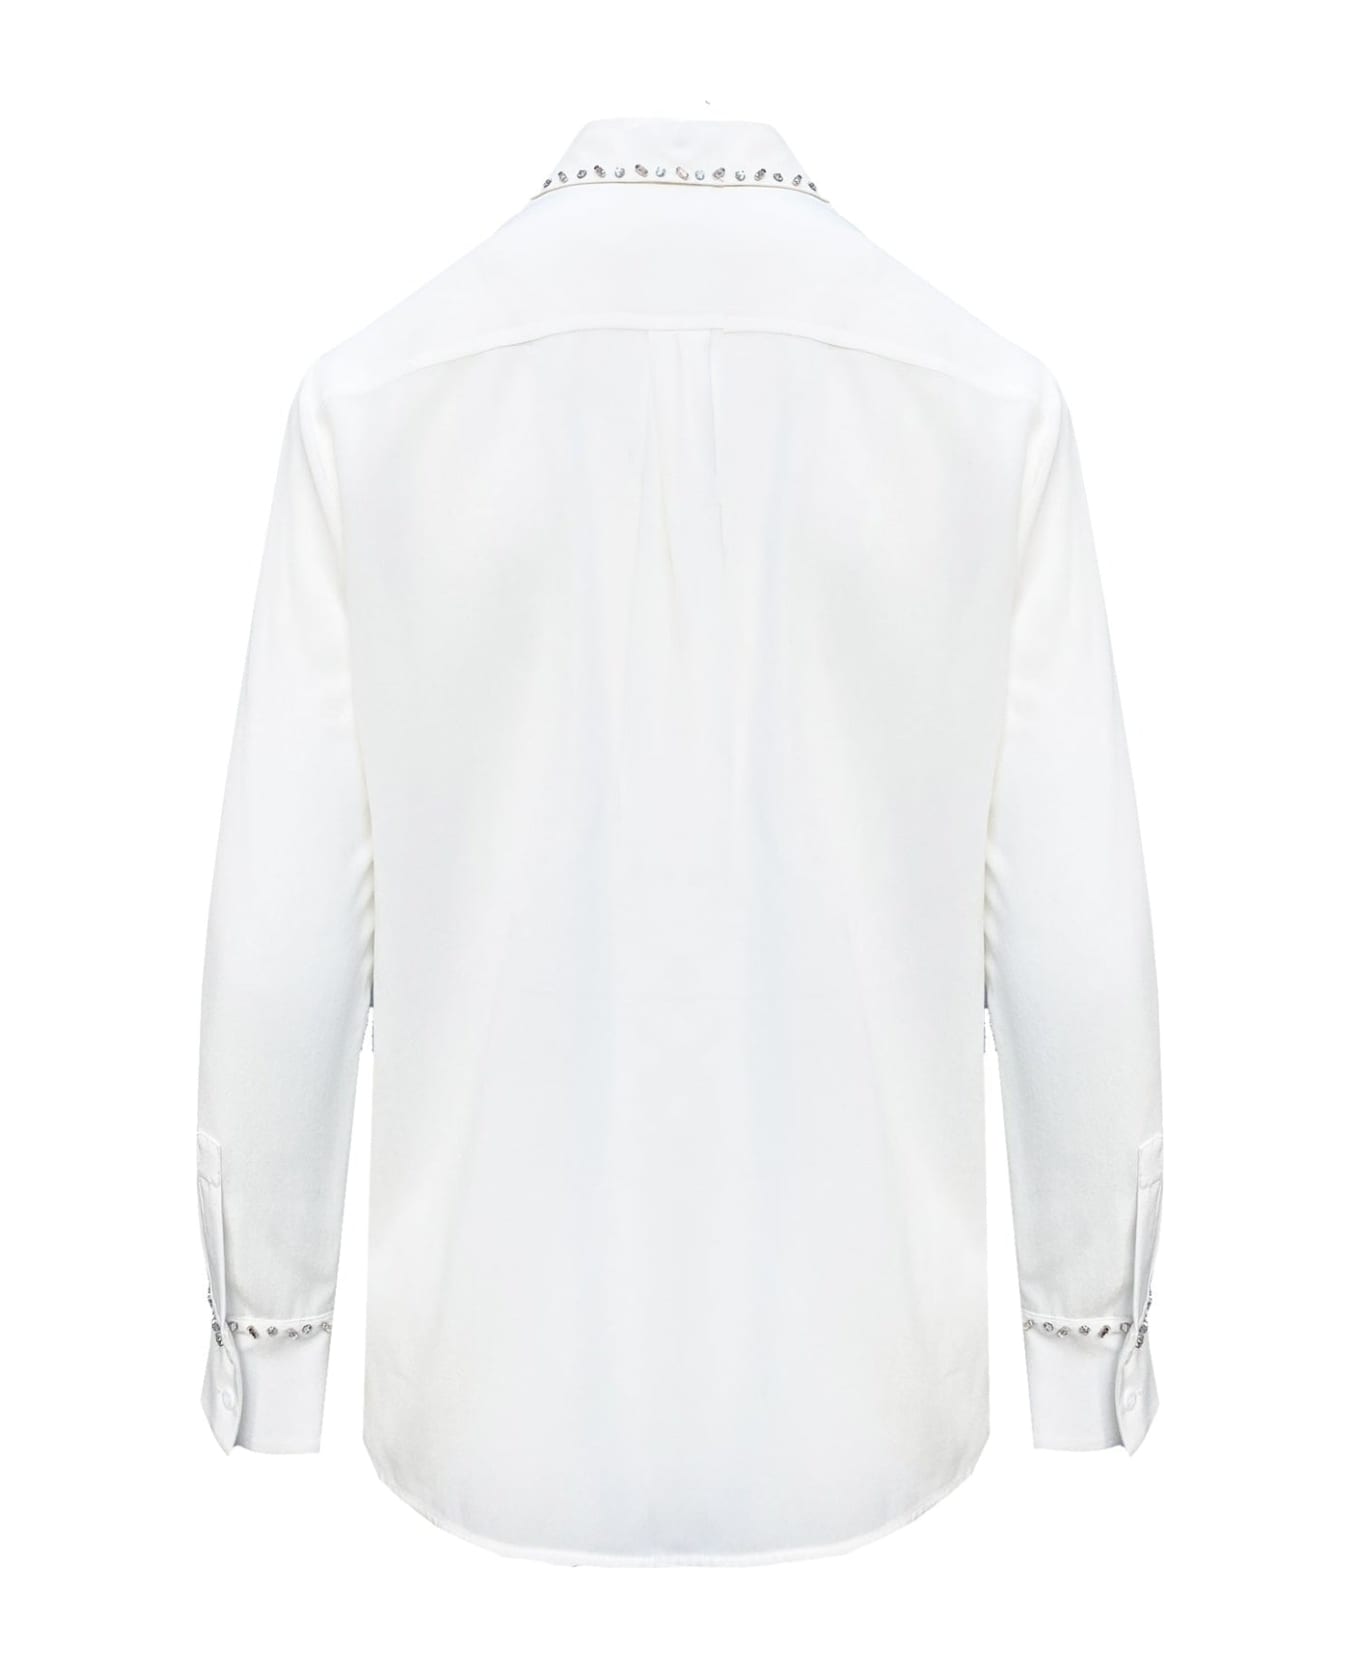 Max Mara Studio Studio Dire Shirt - White